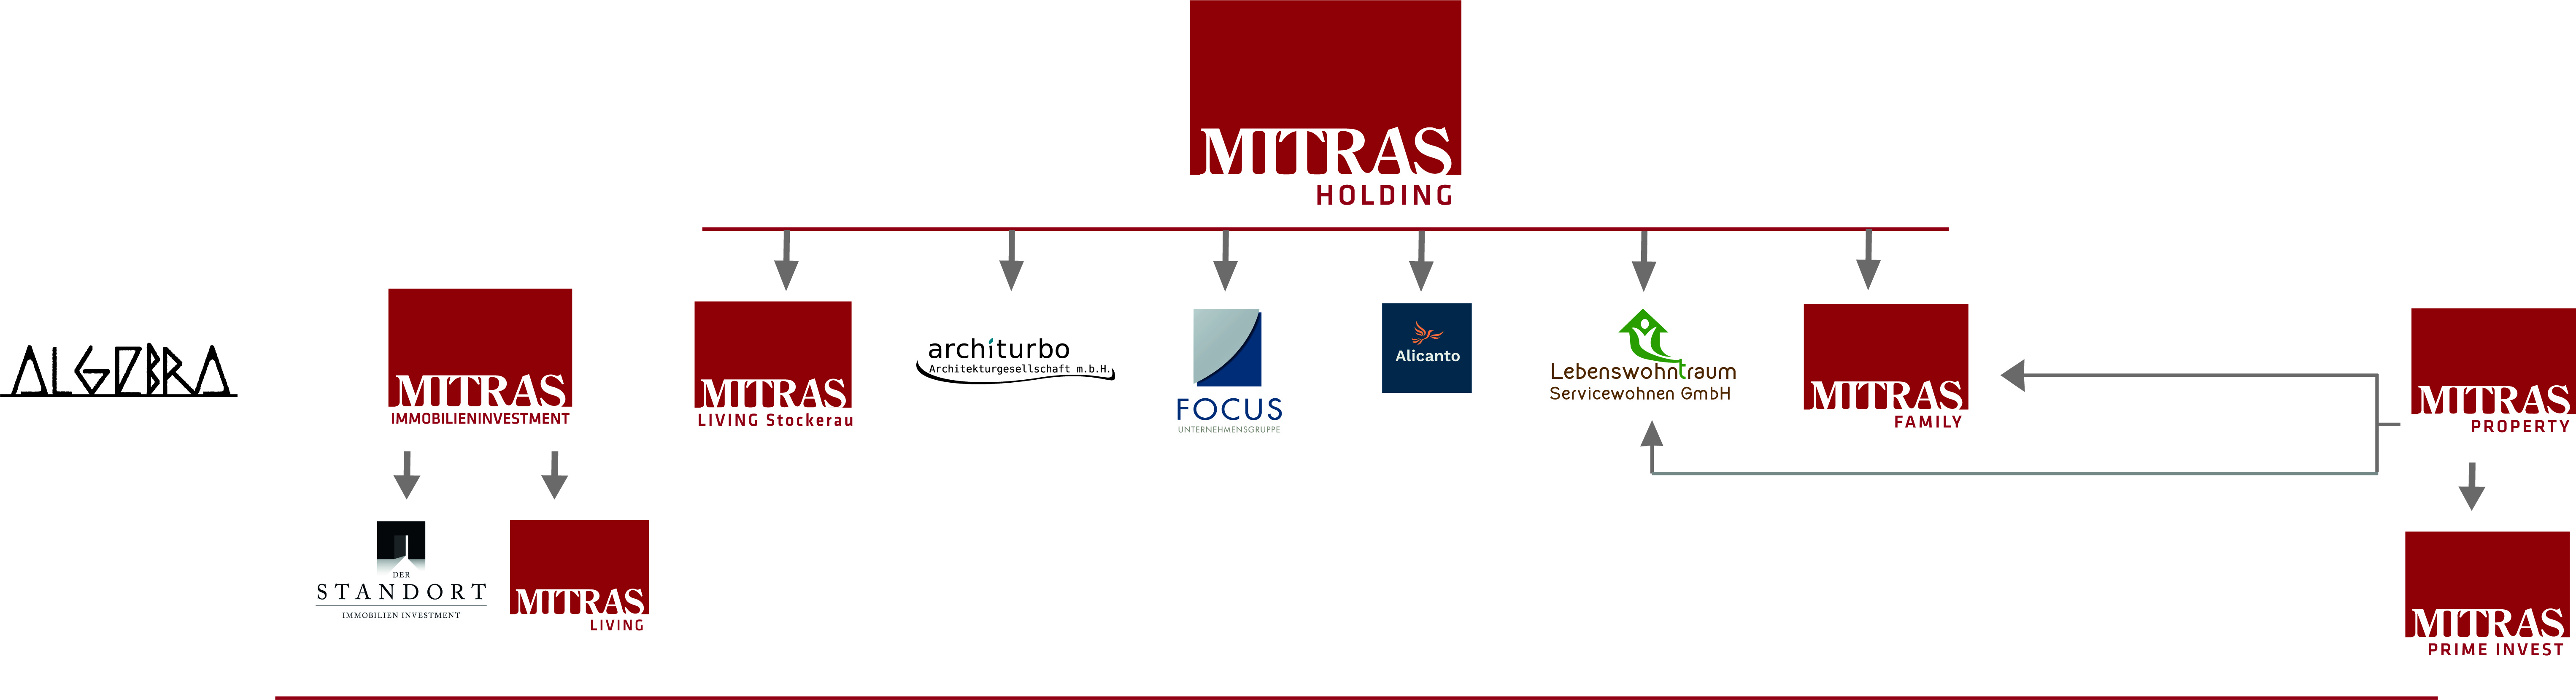 Organigramm der MITRAS Holding